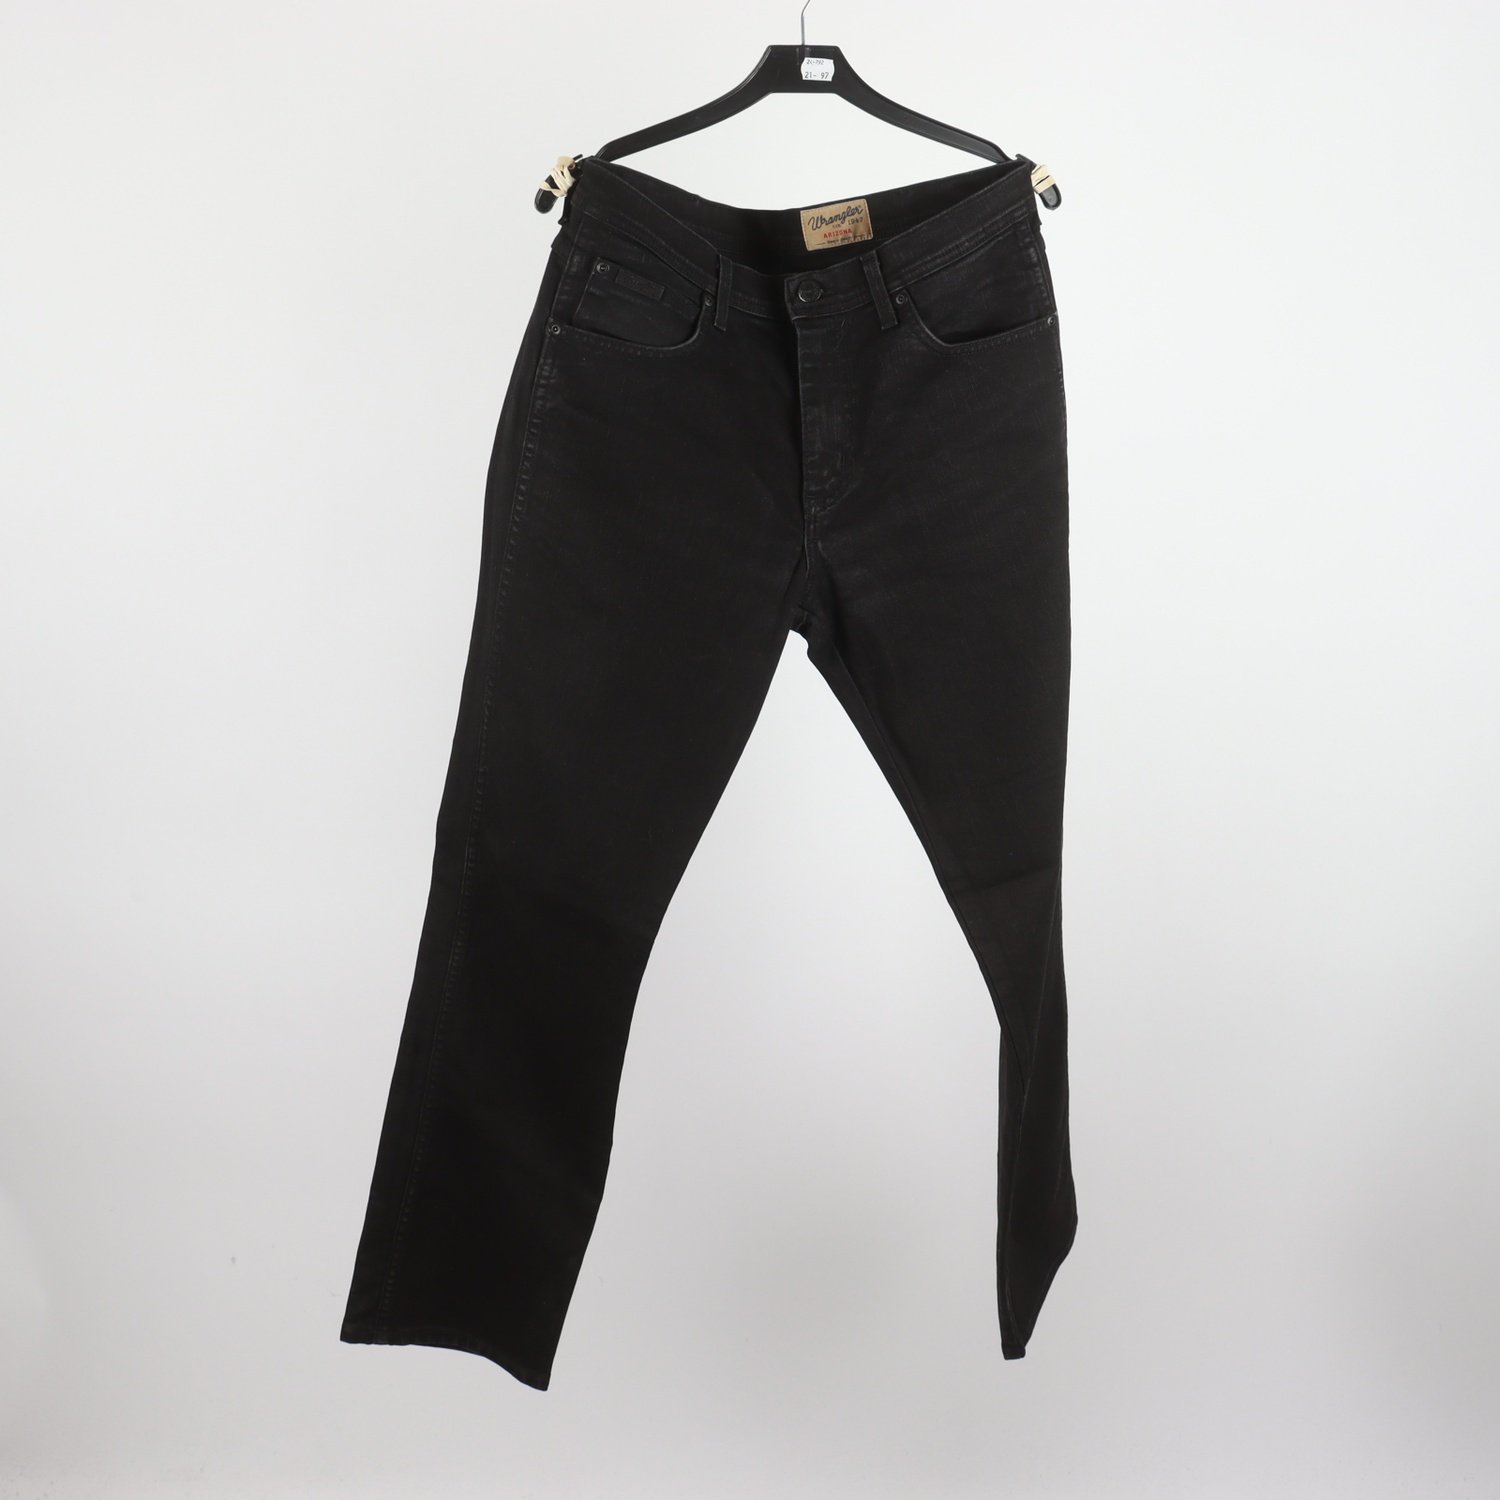 Jeans, Wrangler Arizona, stl. 33/32